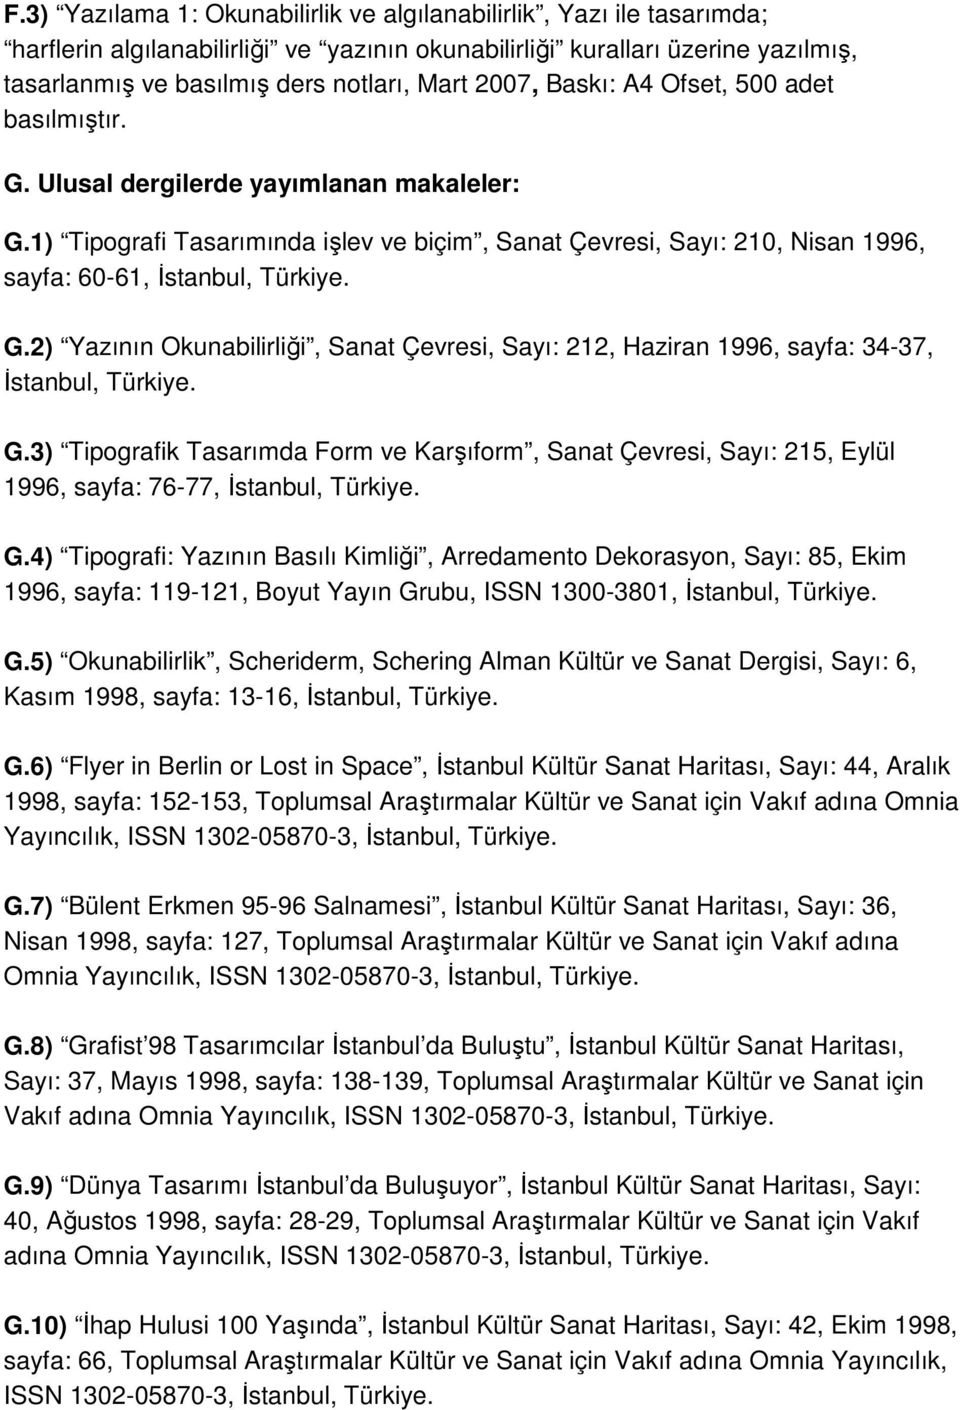 1) Tipografi Tasarımında işlev ve biçim, Sanat Çevresi, Sayı: 210, Nisan 1996, sayfa: 60-61, İstanbul, Türkiye. G.